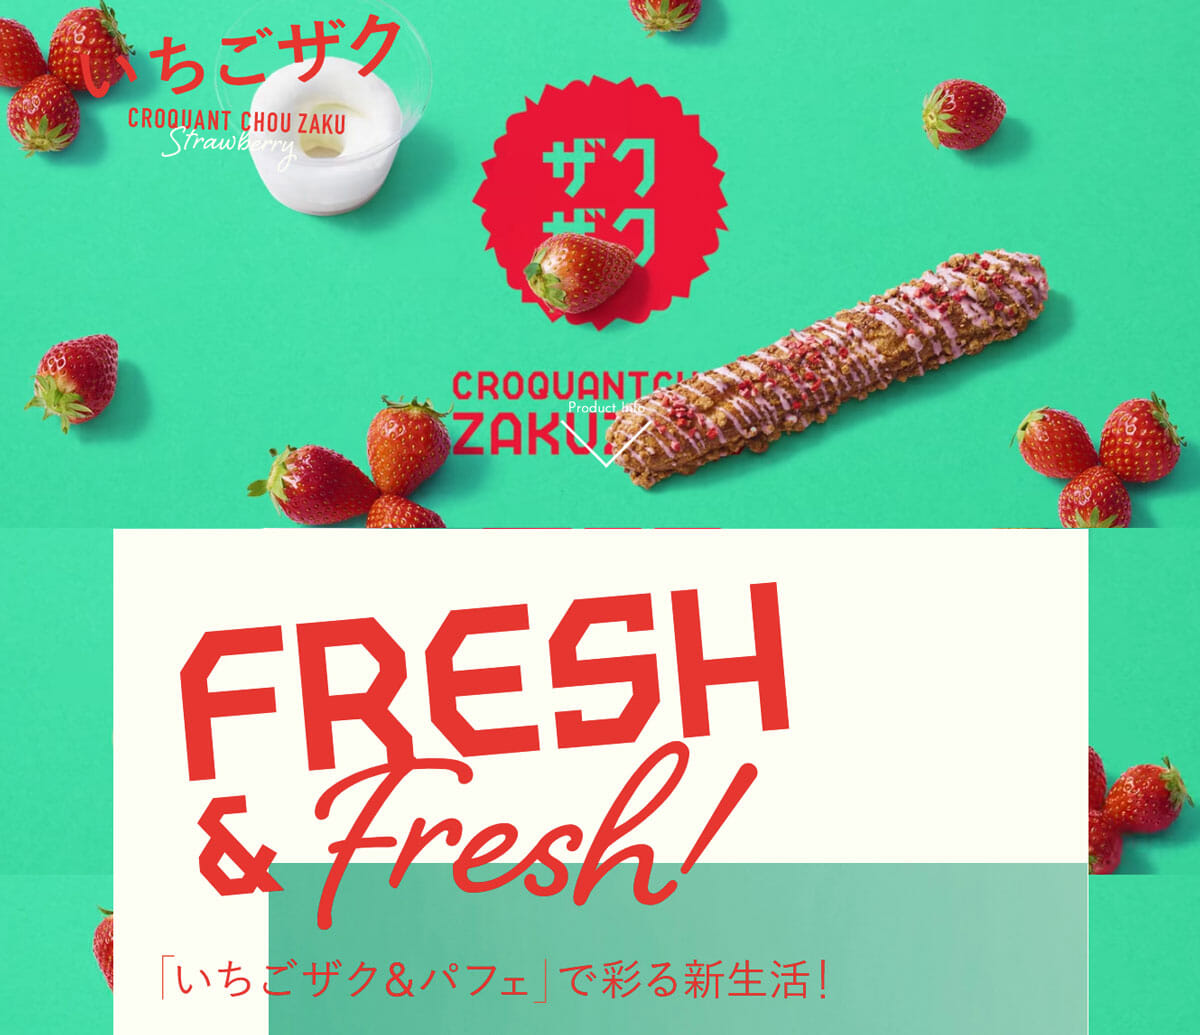 「クロッカンシュー ザクザク」で2019年4月に行った「いちごザク&パフェ」キャンペーンサイト　<a href="https://zakuzaku.co.jp/lp/strawberry2019/">https://zakuzaku.co.jp/lp/strawberry2019/</a>